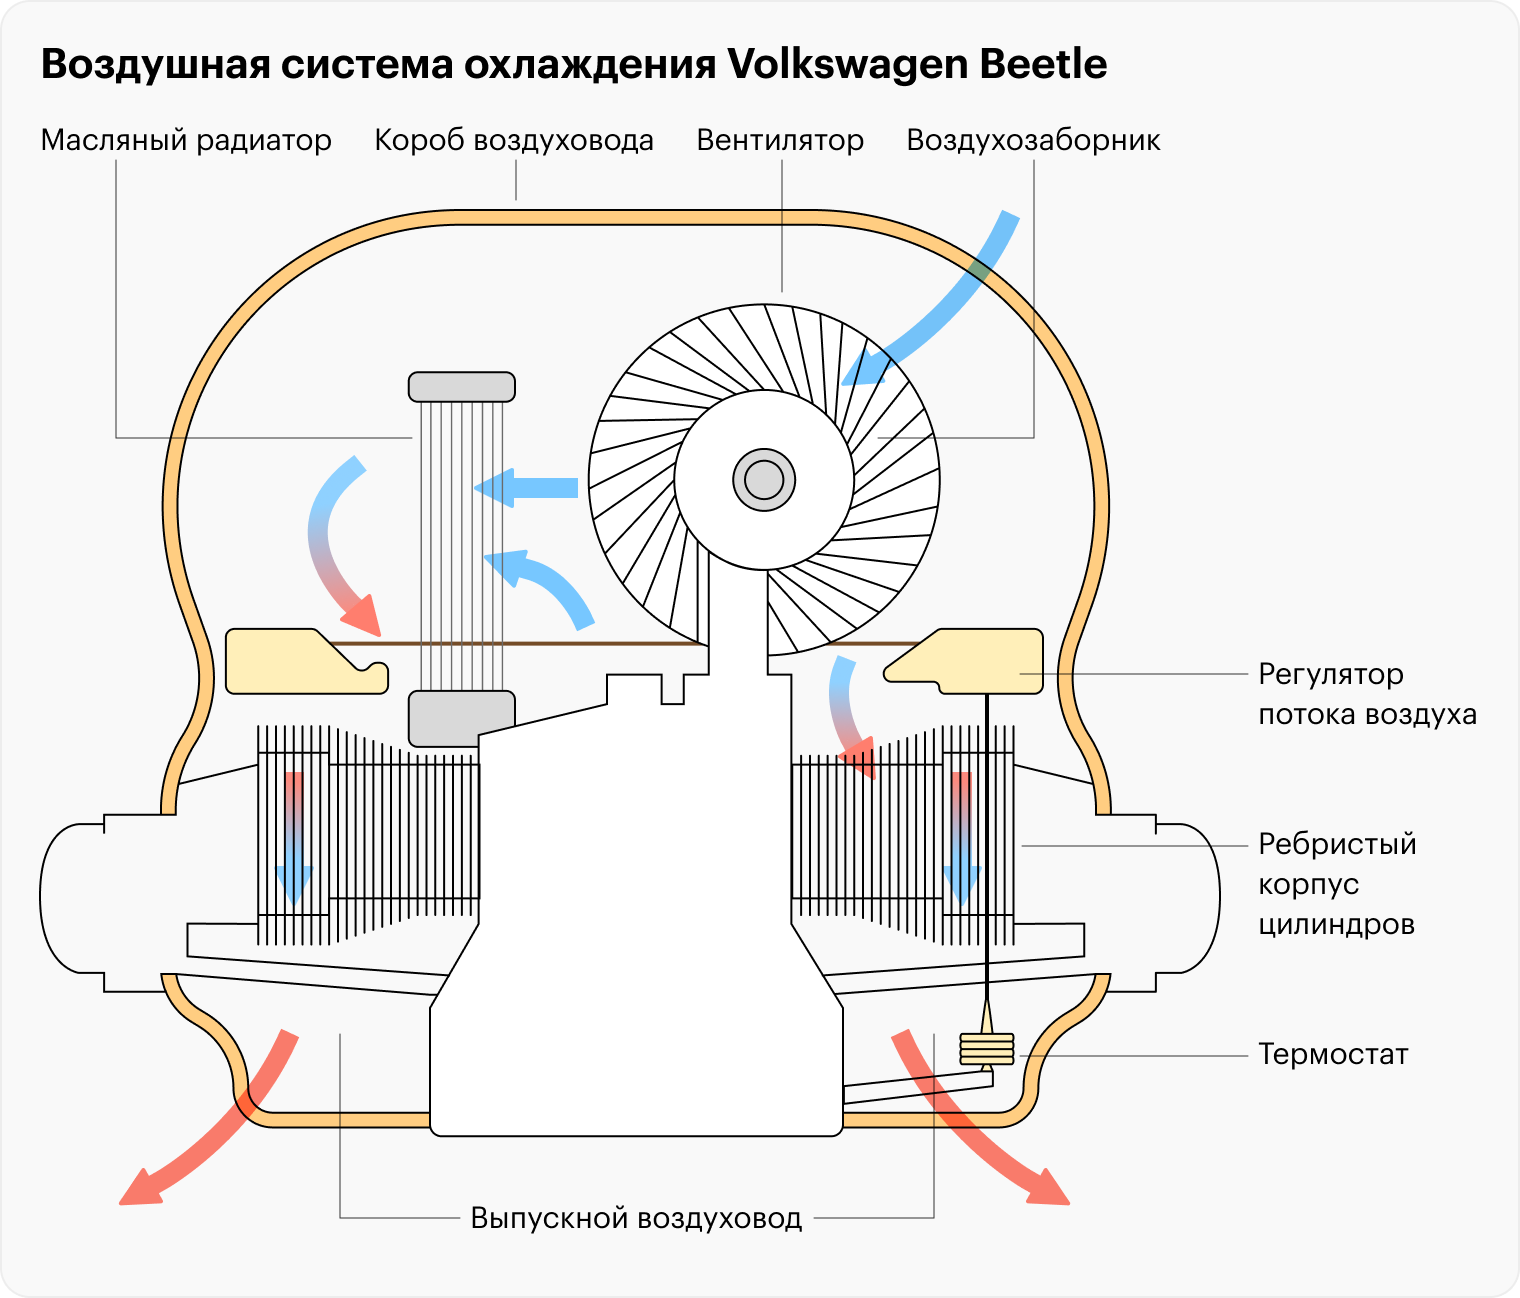 Асинхронные электродвигатели: схема, принцип работы и устройство